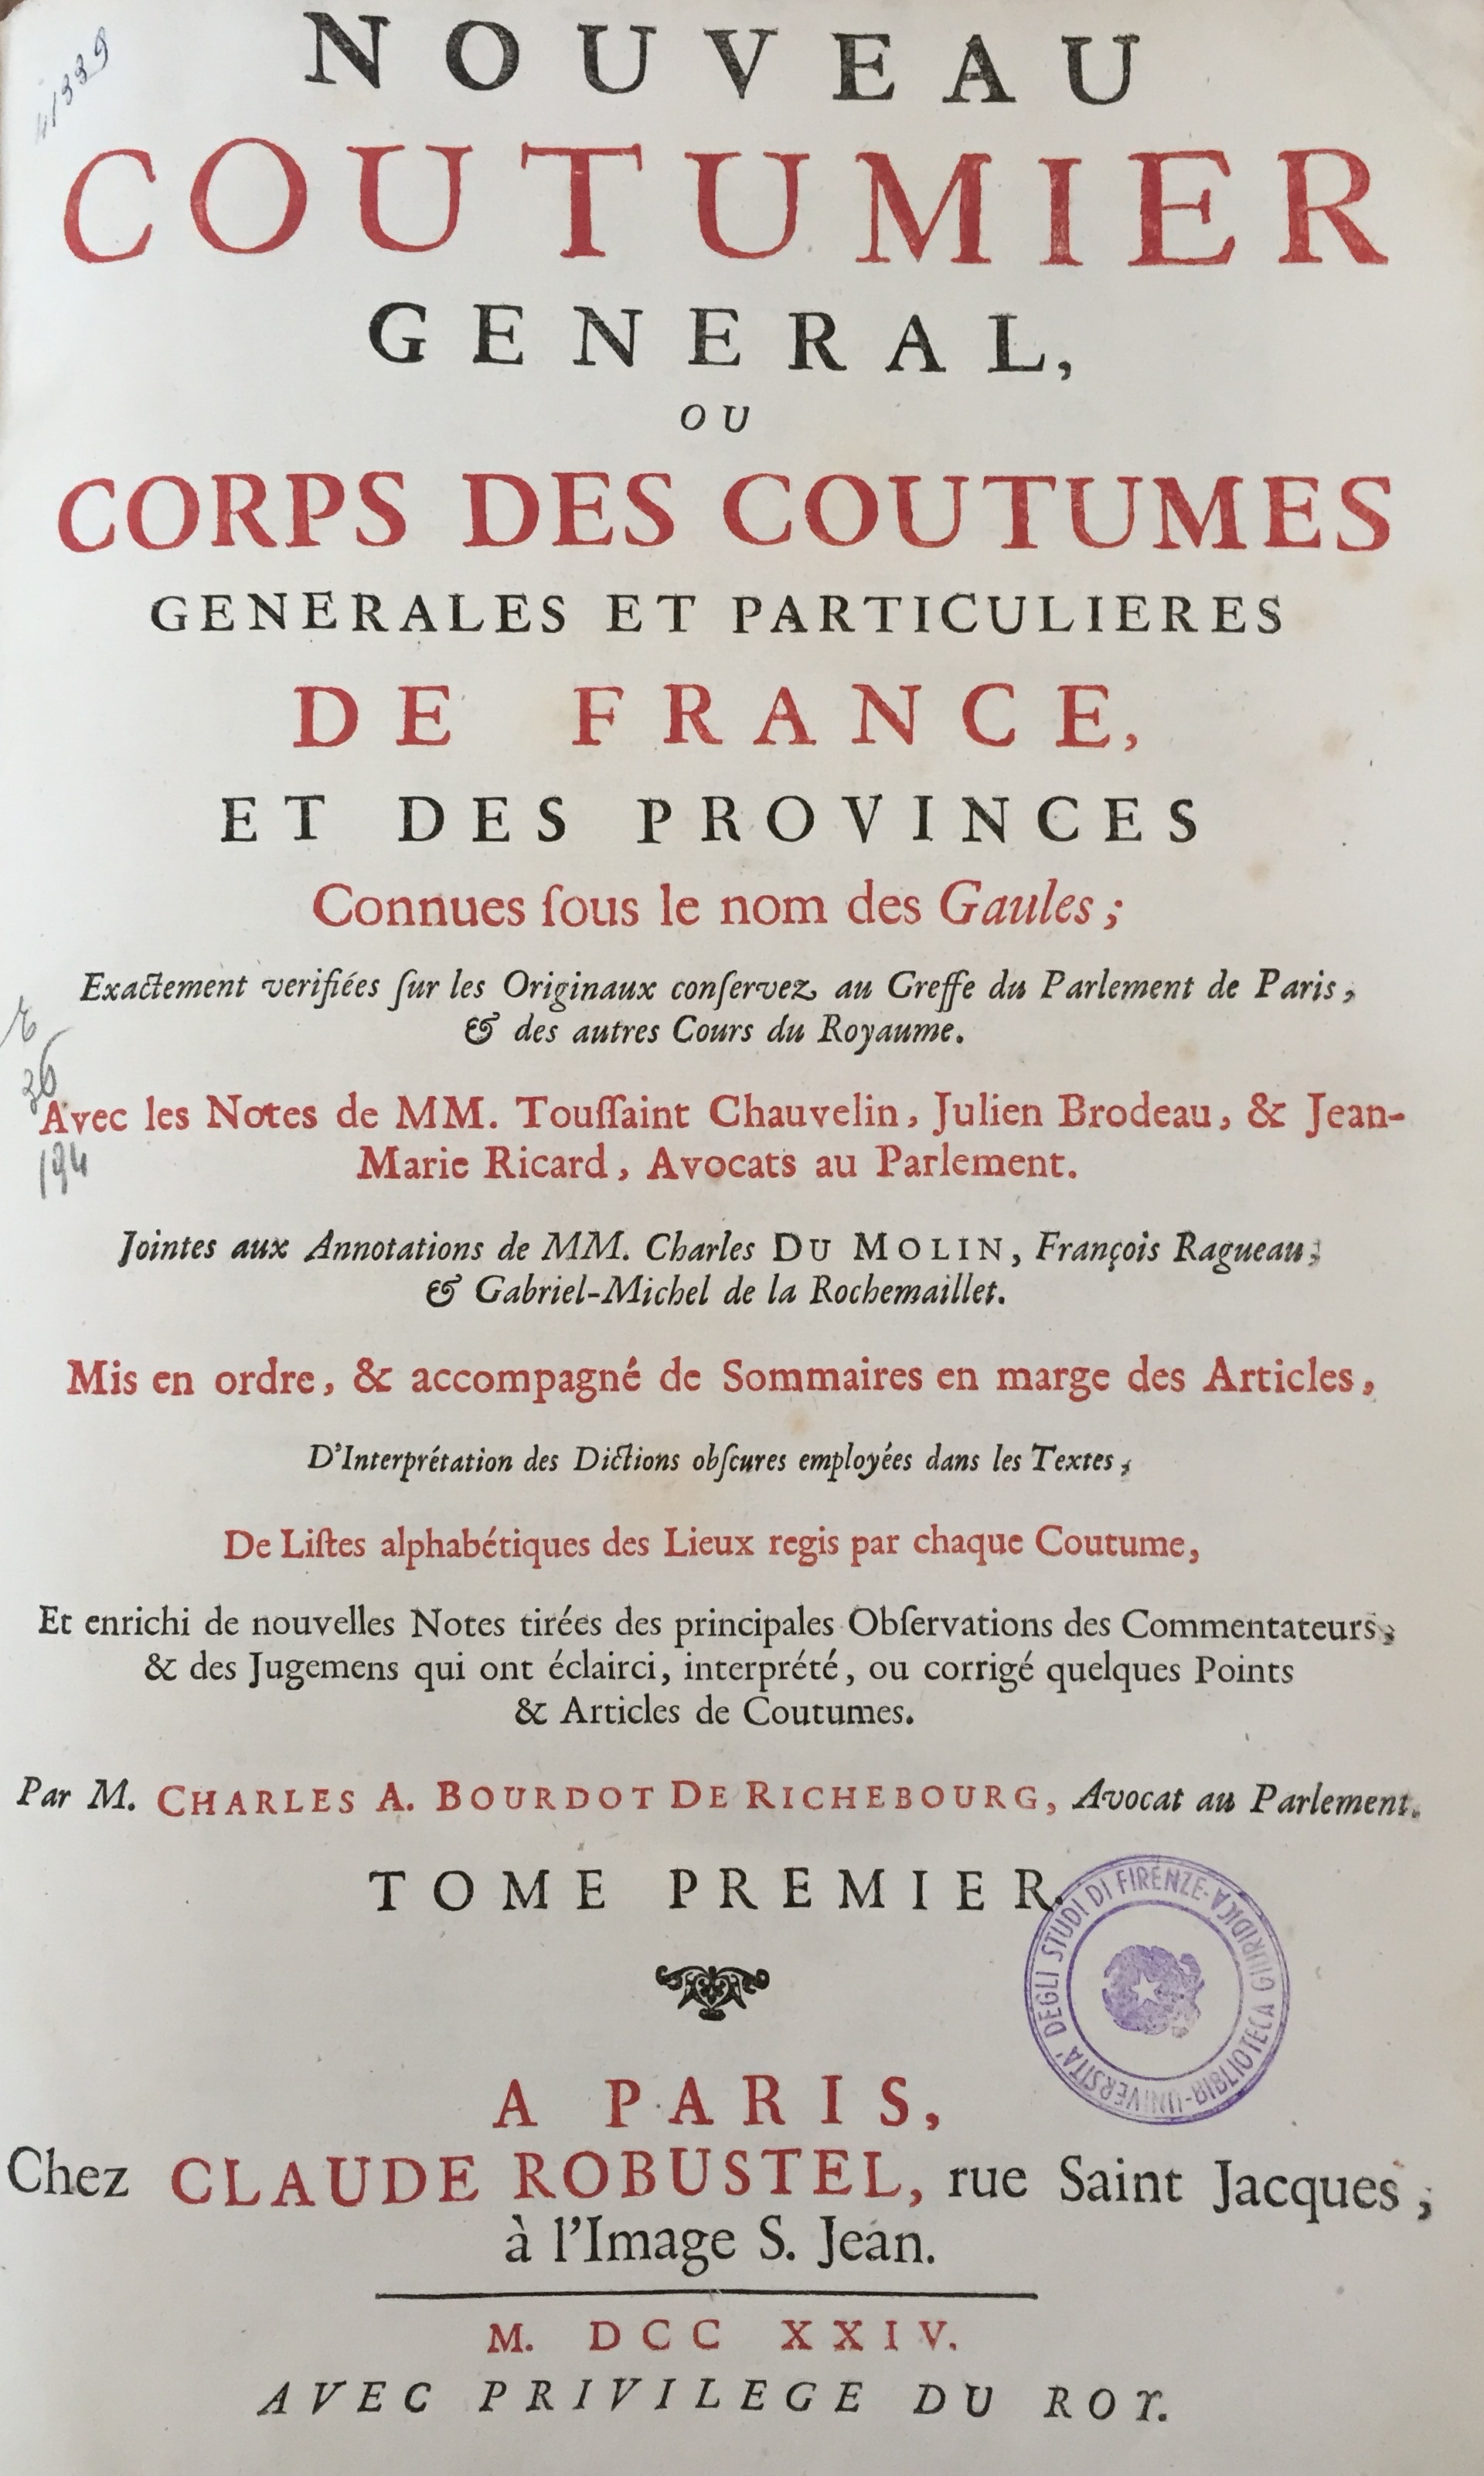 Nouveau coutumier general, ou Corps des coutumes generales et particulieres de France